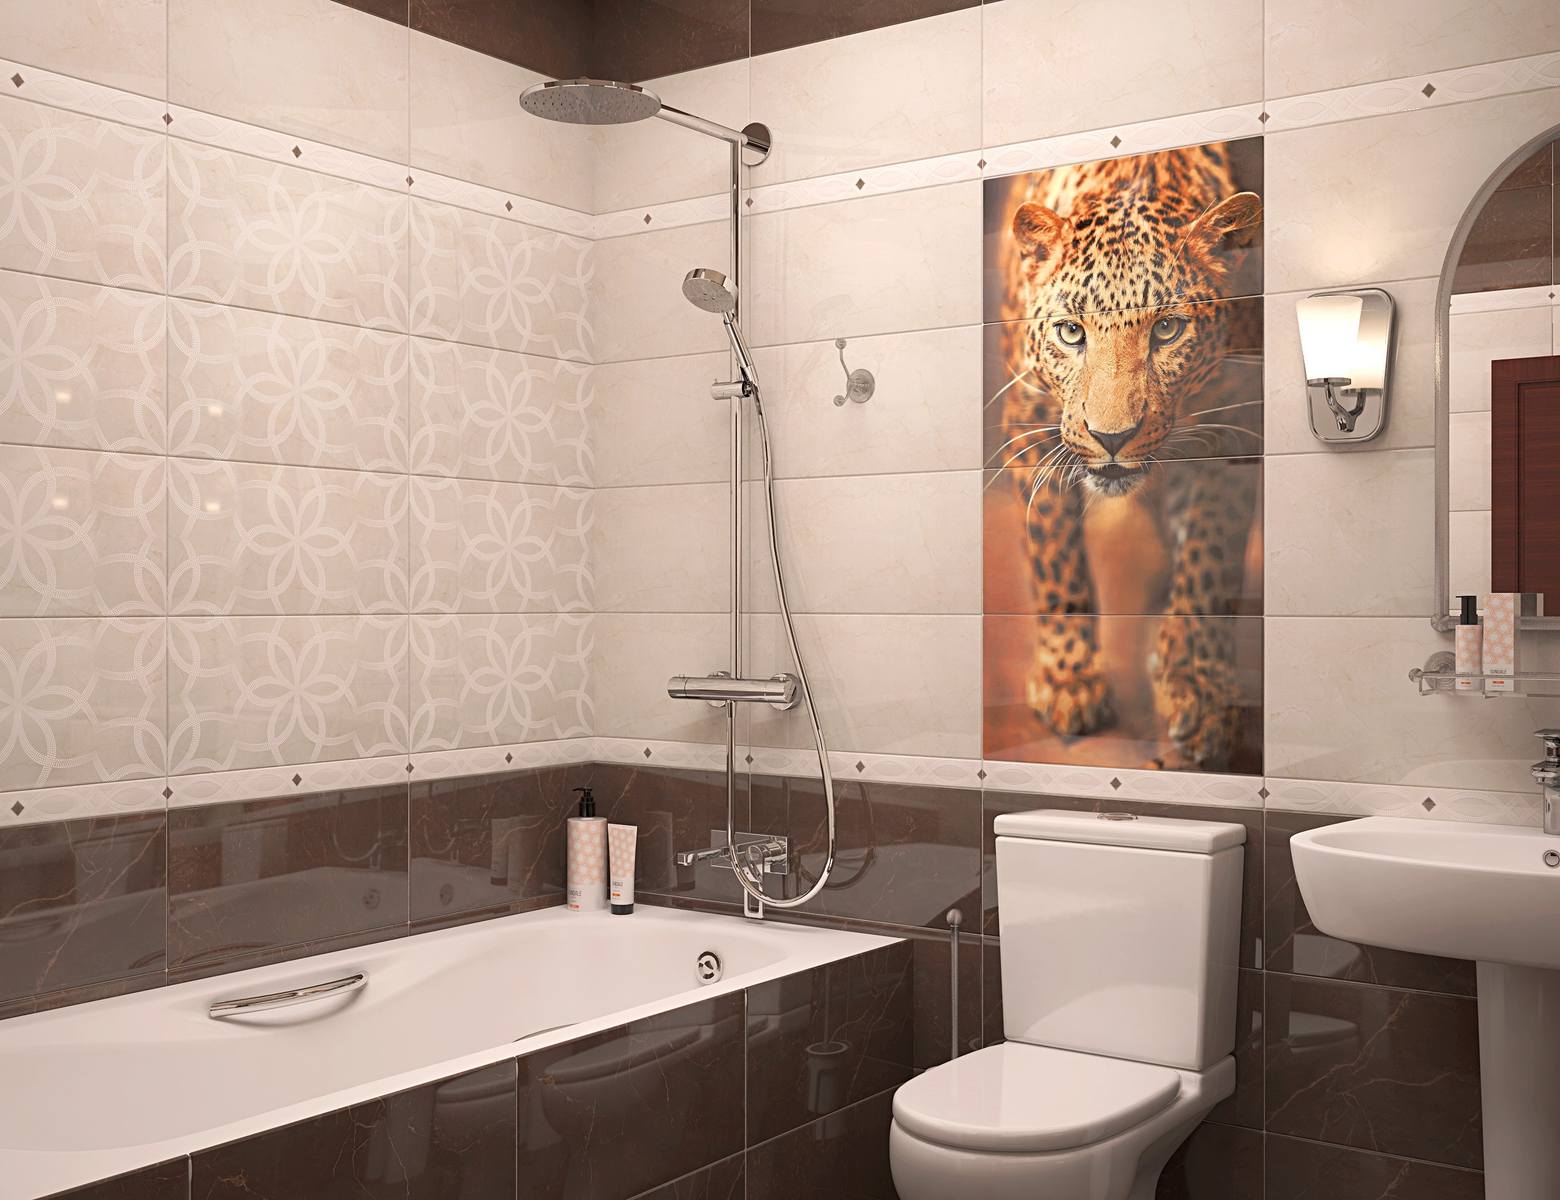 Какую ванную лучше купить плитку. Leopard s/4 панно коричневый 996*500 (из 4-х плиток) sw9leo21. Плитка в ванную комнату. Панно для ванной комнаты. Кафельная плитка для ванной комнаты.